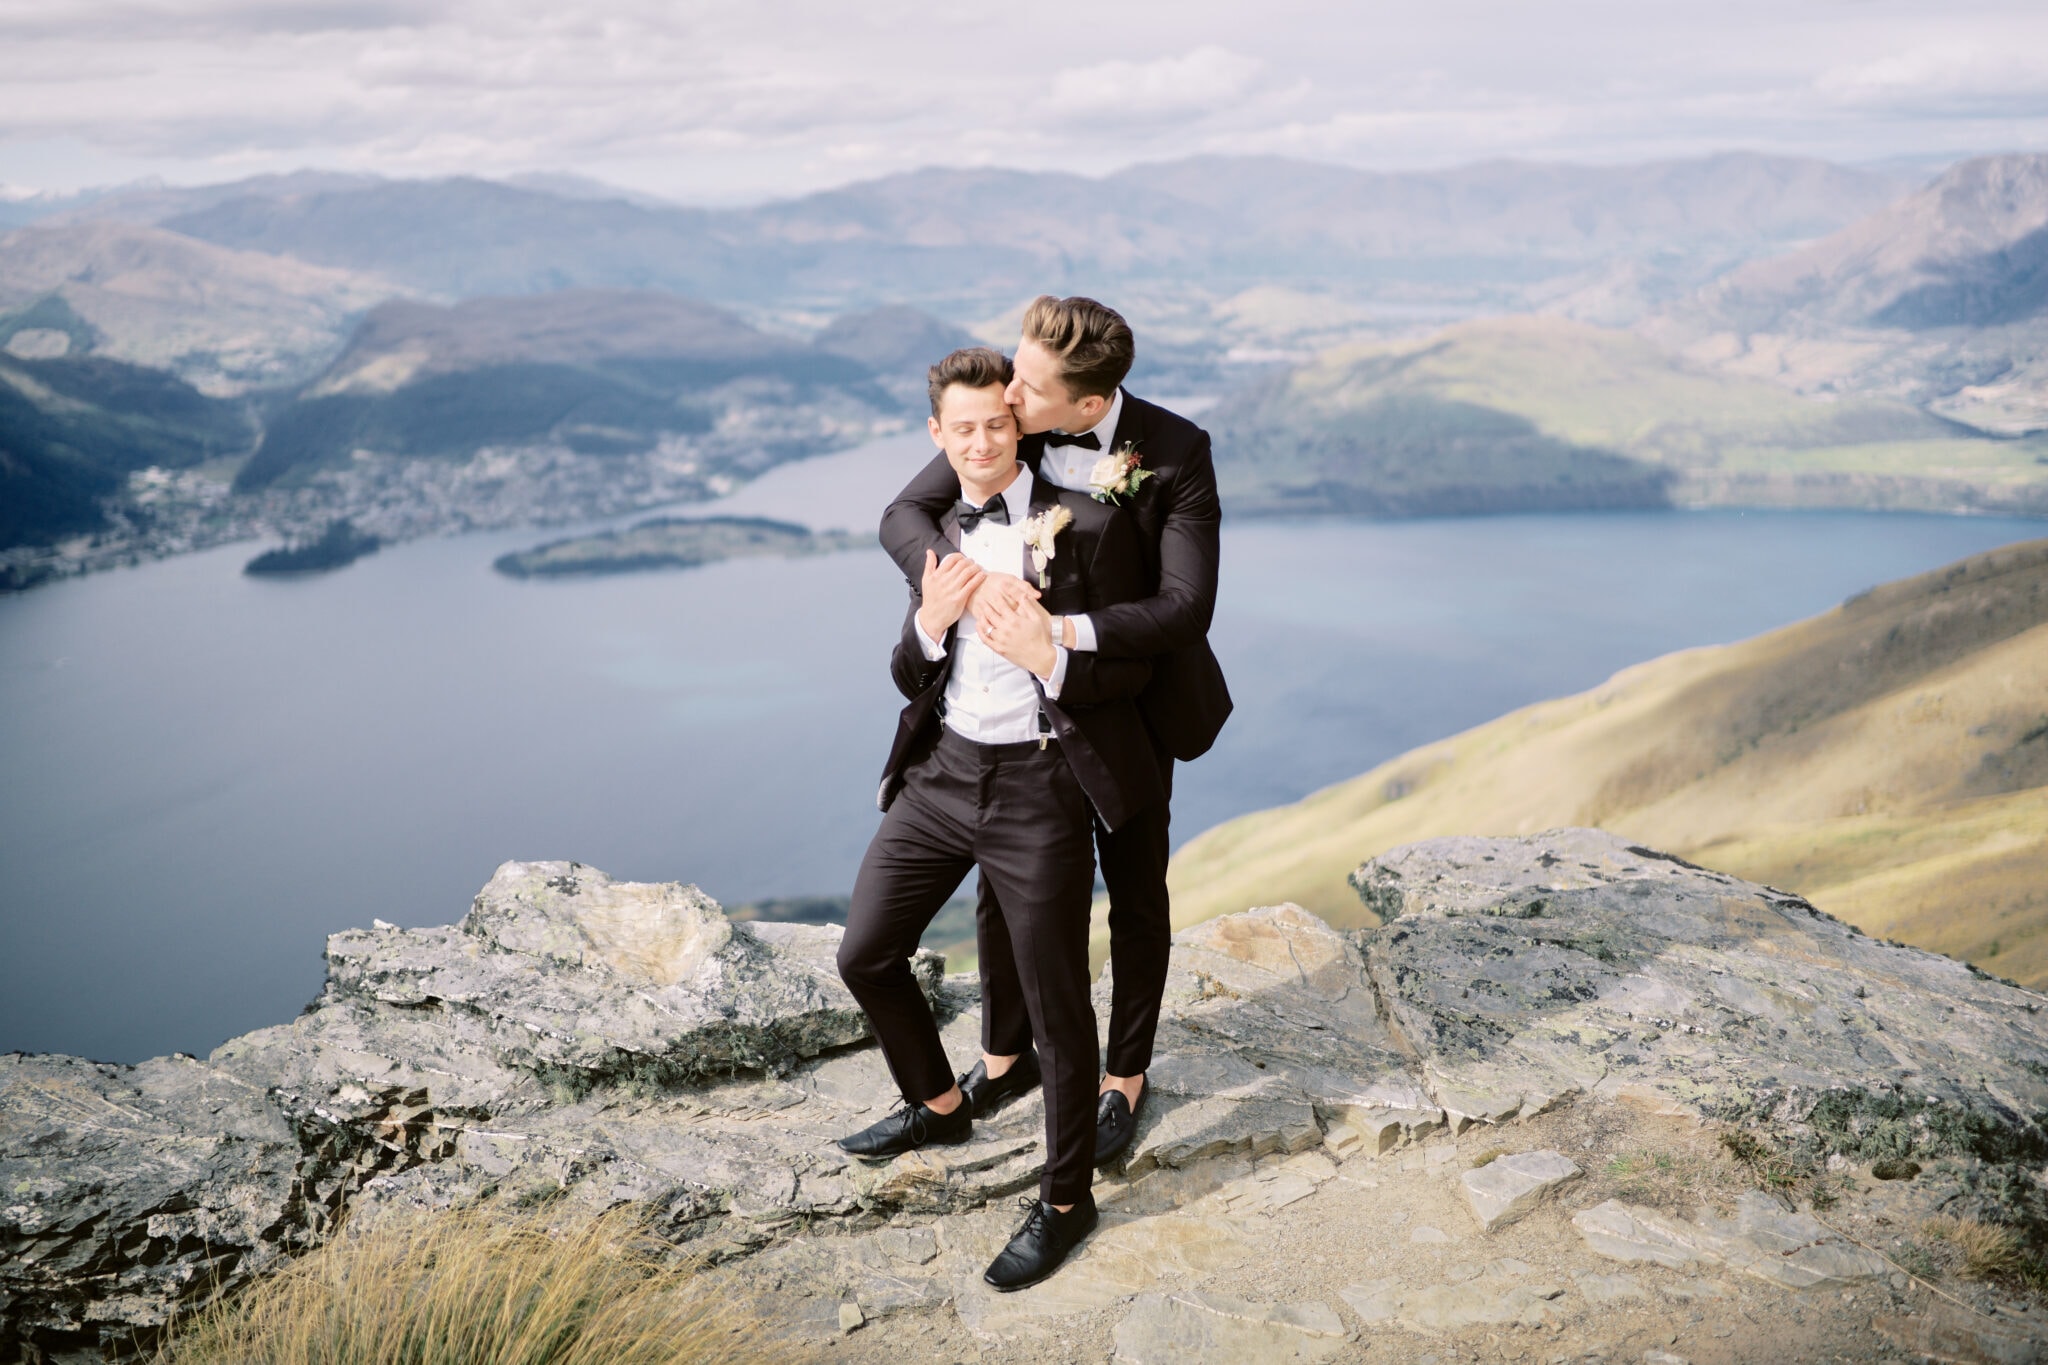 Queenstown New Zealand Elopement Wedding Photographer - Two grooms enjoying a Heli-Elopement in Queenstown, hugging on top of a mountain overlooking lake wanaka.